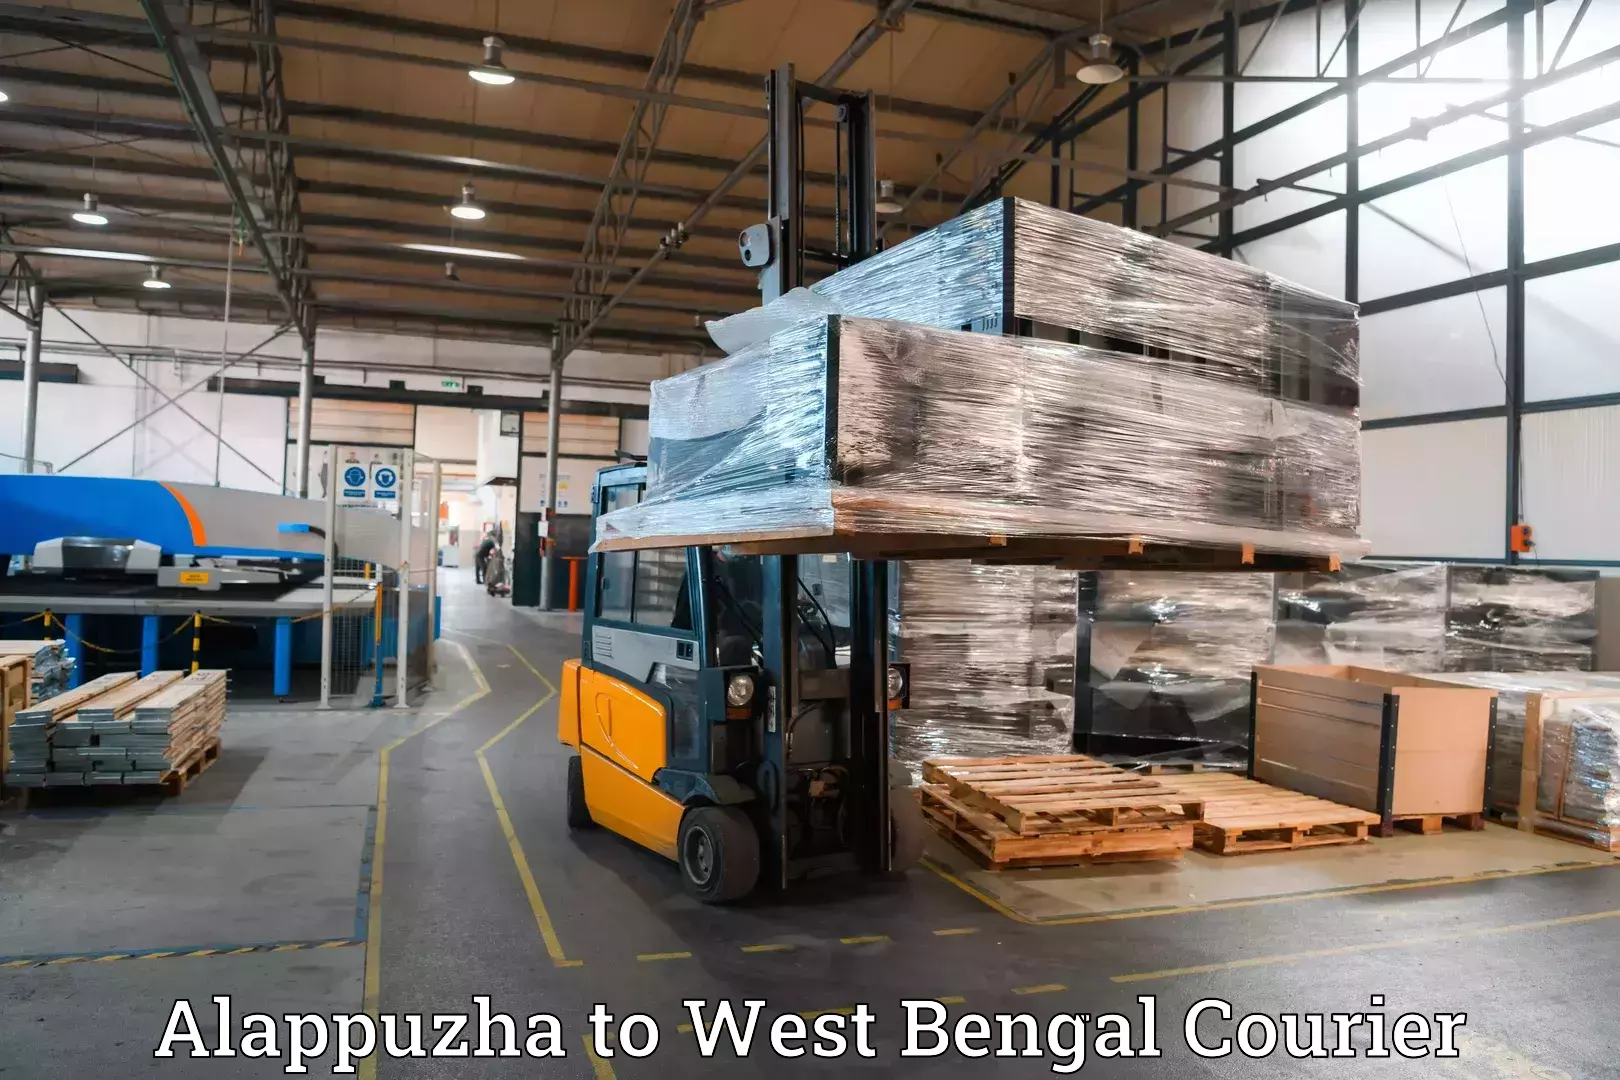 Baggage shipping experts Alappuzha to Maheshtala